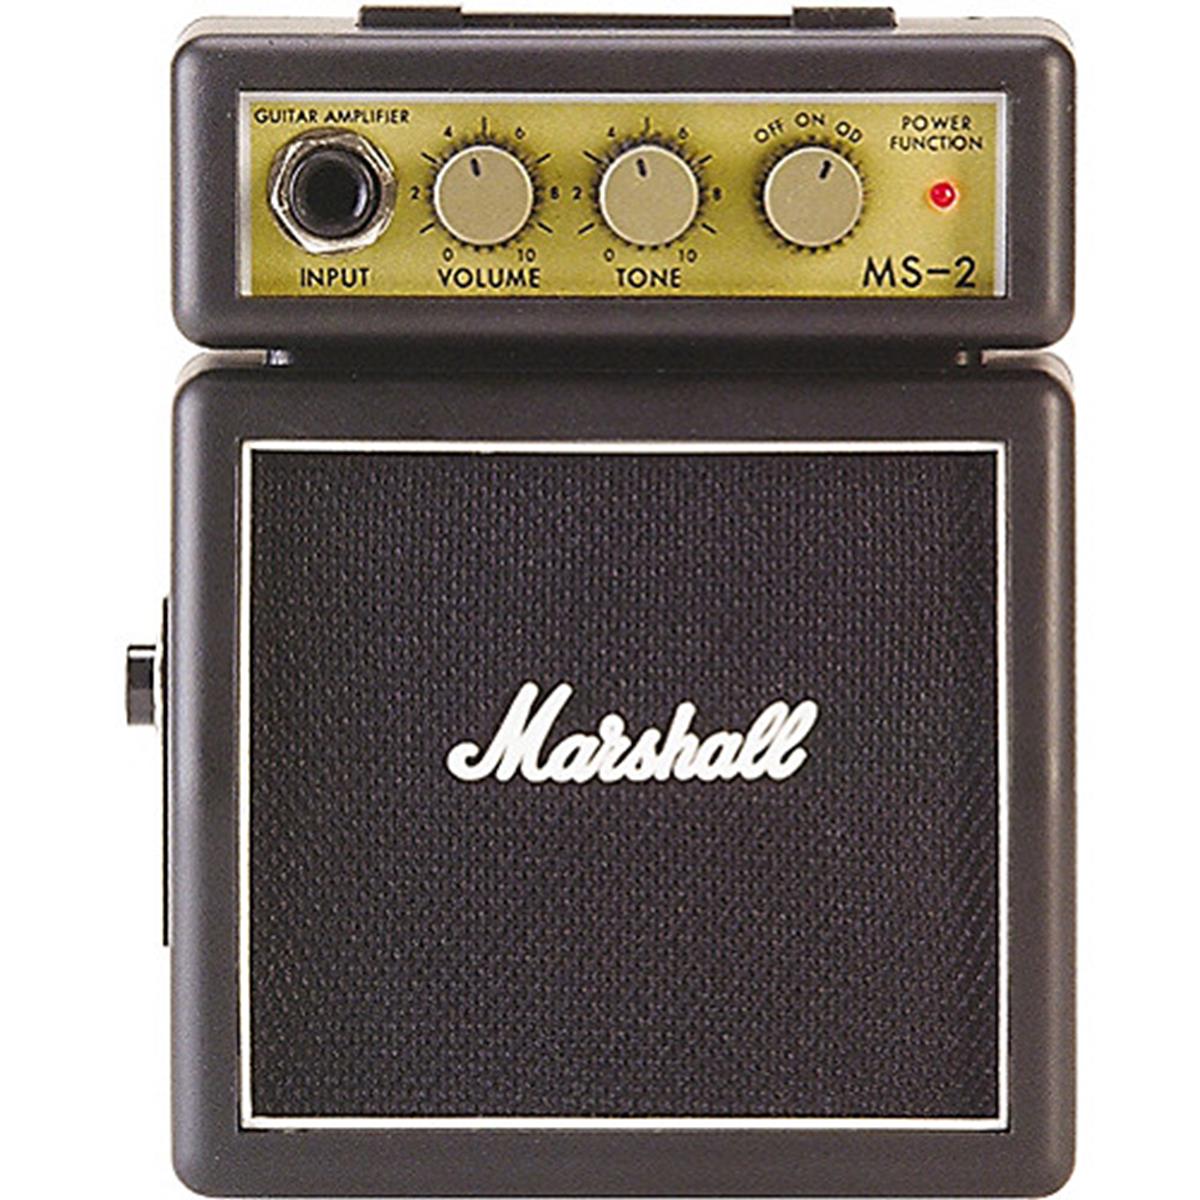 MARSHALL-MS-2-MINI-AMP-sku-165